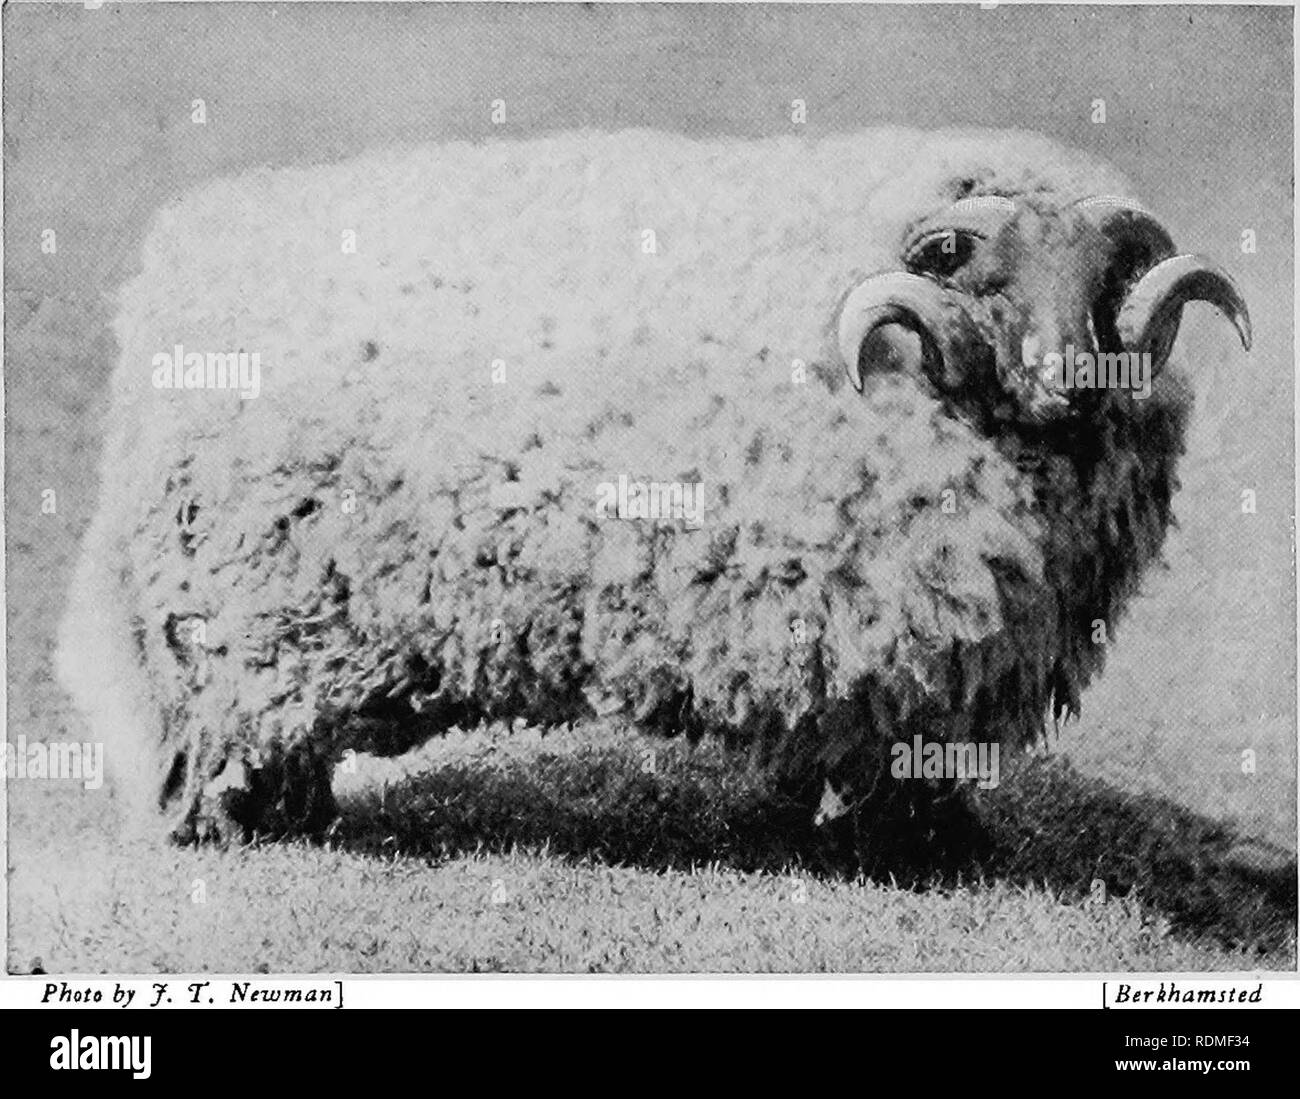 . Mammiferi di altre terre;. Mammiferi. 204 di animali viventi del mondo pecore. Più tardi una grande pecora pesanti, con lana lunga e un corpo massiccio, è stato allevato nelle Midlands, e chiamato il Leicester lungo la lana. Questa pecora dà un grande taglia di lana e molto grossolana del montone. Le Pecore CHEVIOT, originariamente allevati sulle colline di quel nome, ora è uno dei pilastri della Scotch moun- tain agricoltore. Il Cheviots mangiare l'erba sulle alte colline, mentre nero- fronte Highland pecore vivono sulla heather più in alto. Il Suffolk, Oxford, Hampshire e altri " giù" pecore sono razze più grandi rispetto al Foto Stock